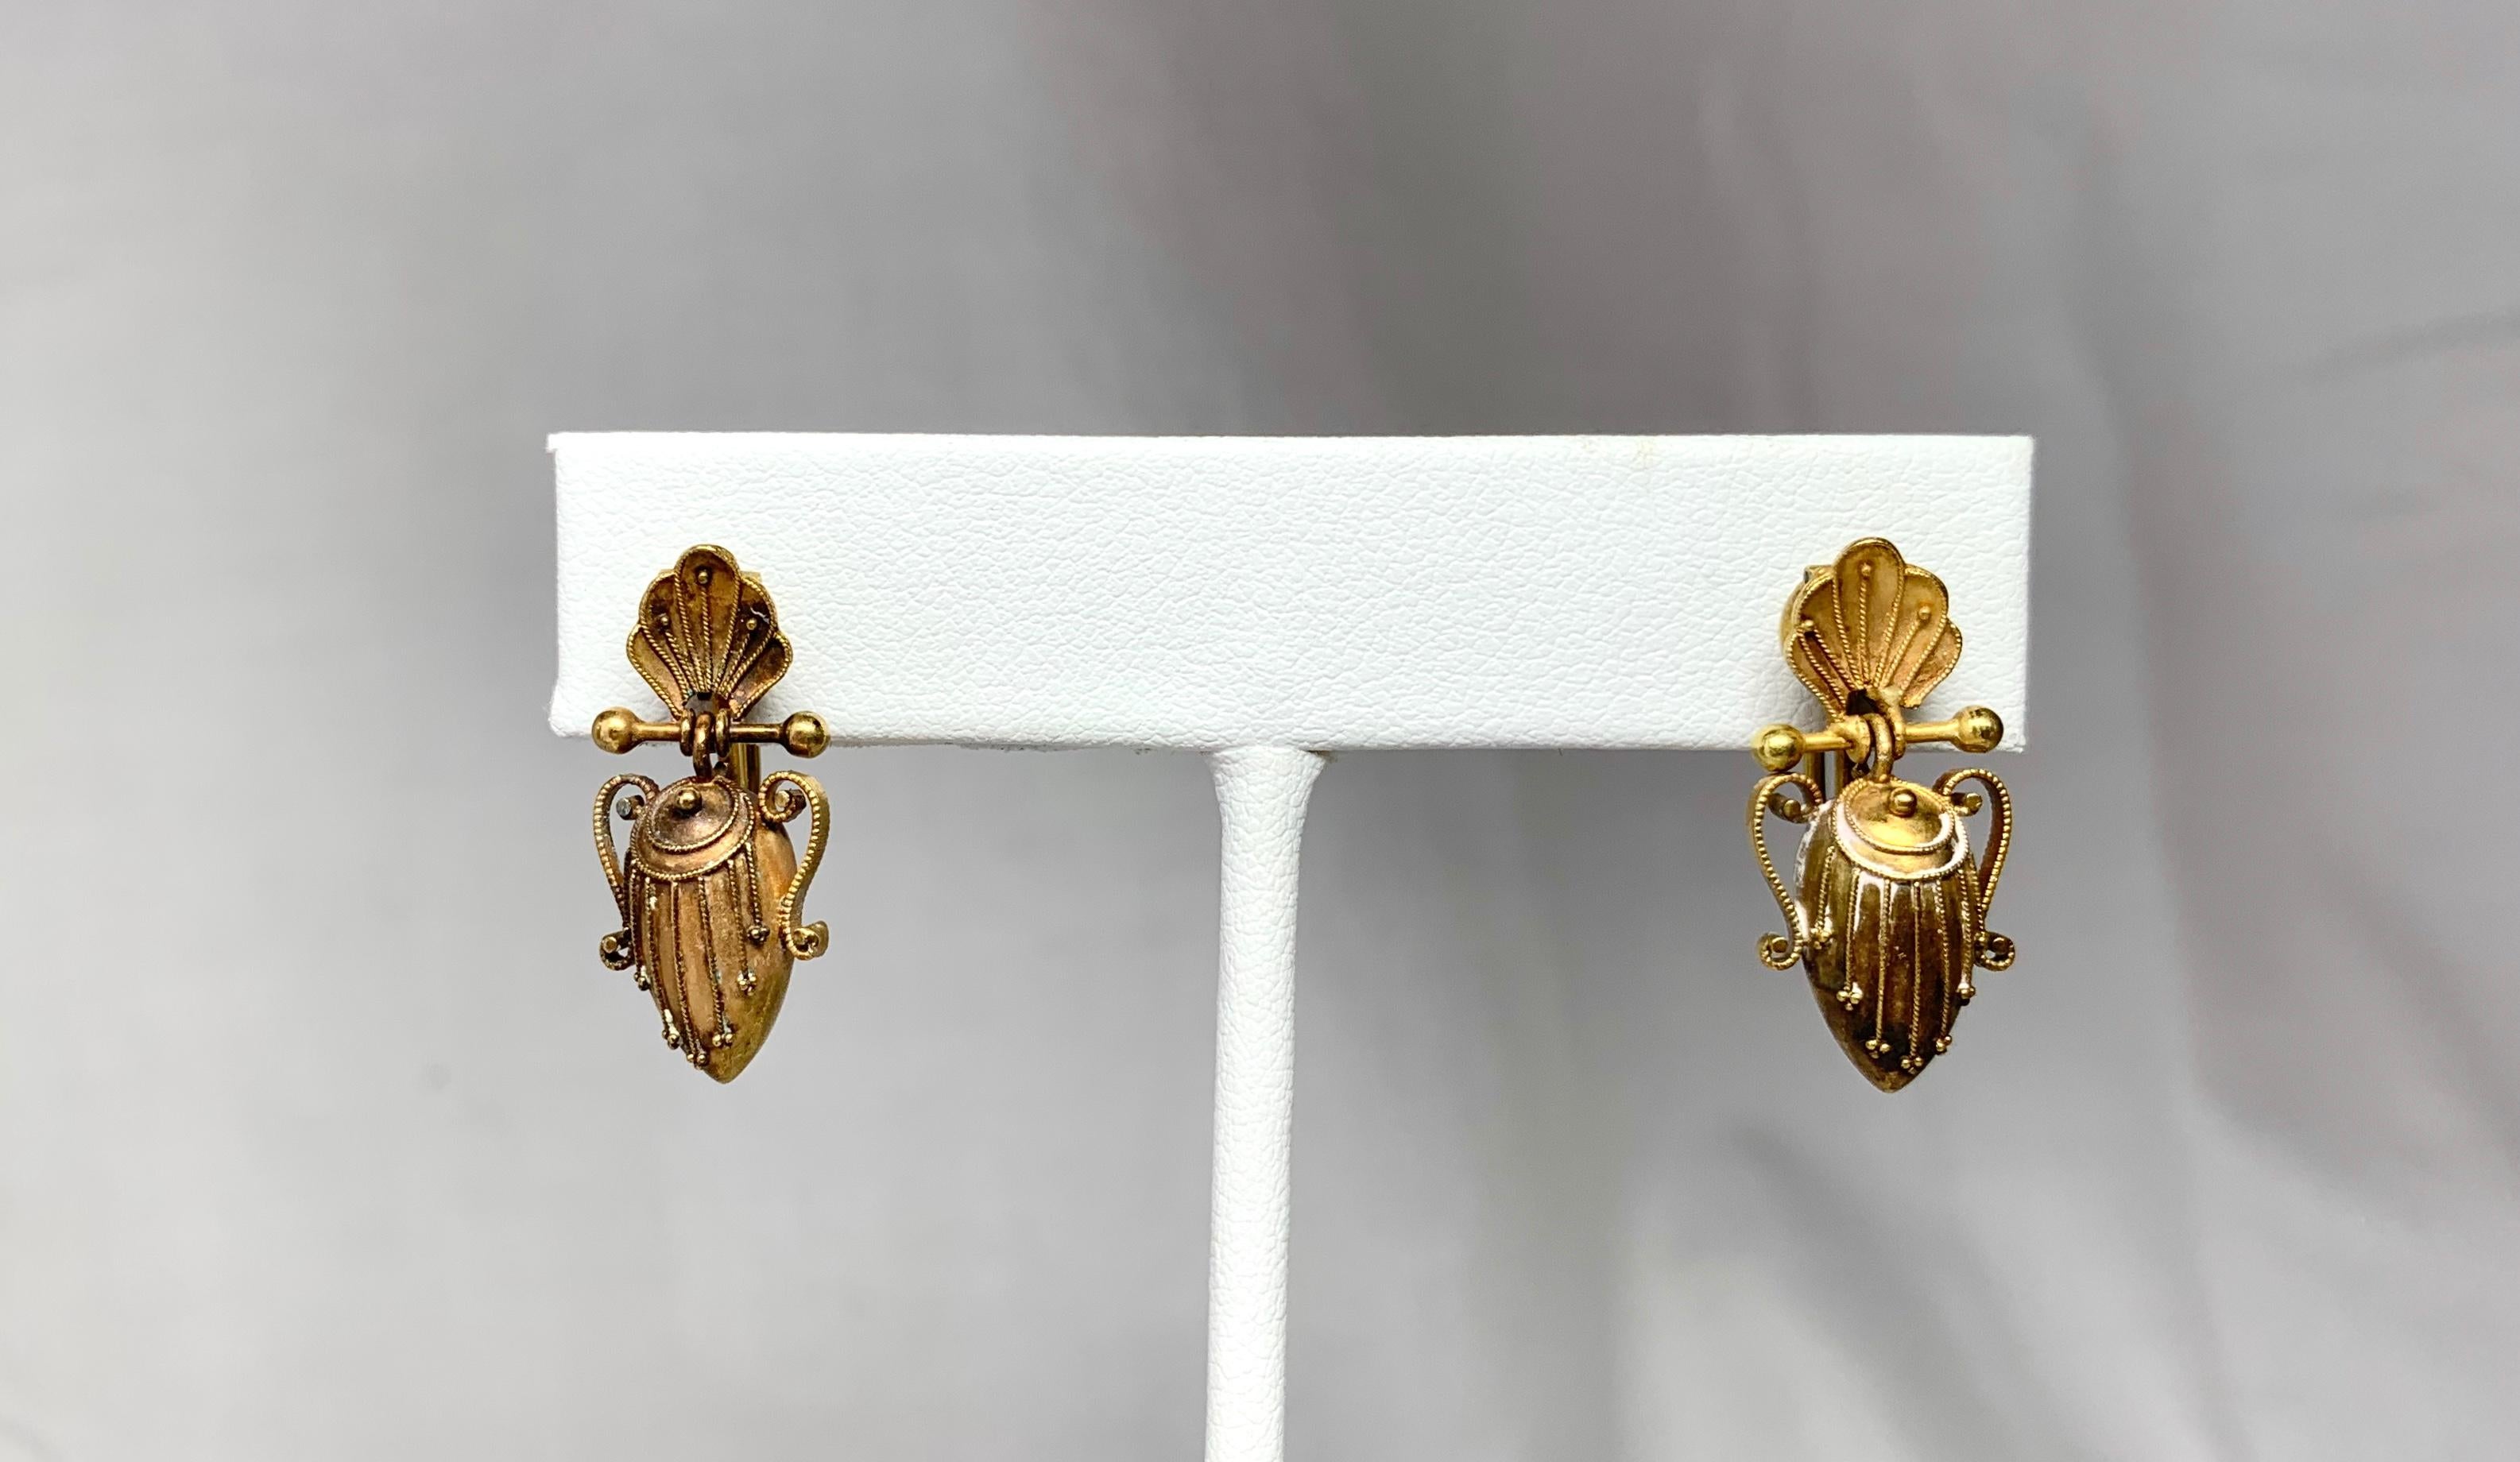 Une paire spectaculaire d'anciennes boucles d'oreilles pendantes en or rose 14-16 carats, de style néo-étrusque victorien, à motif d'urne et de coquillage.   Ces boucles d'oreilles sont de la plus haute qualité.  Ils présentent une extraordinaire